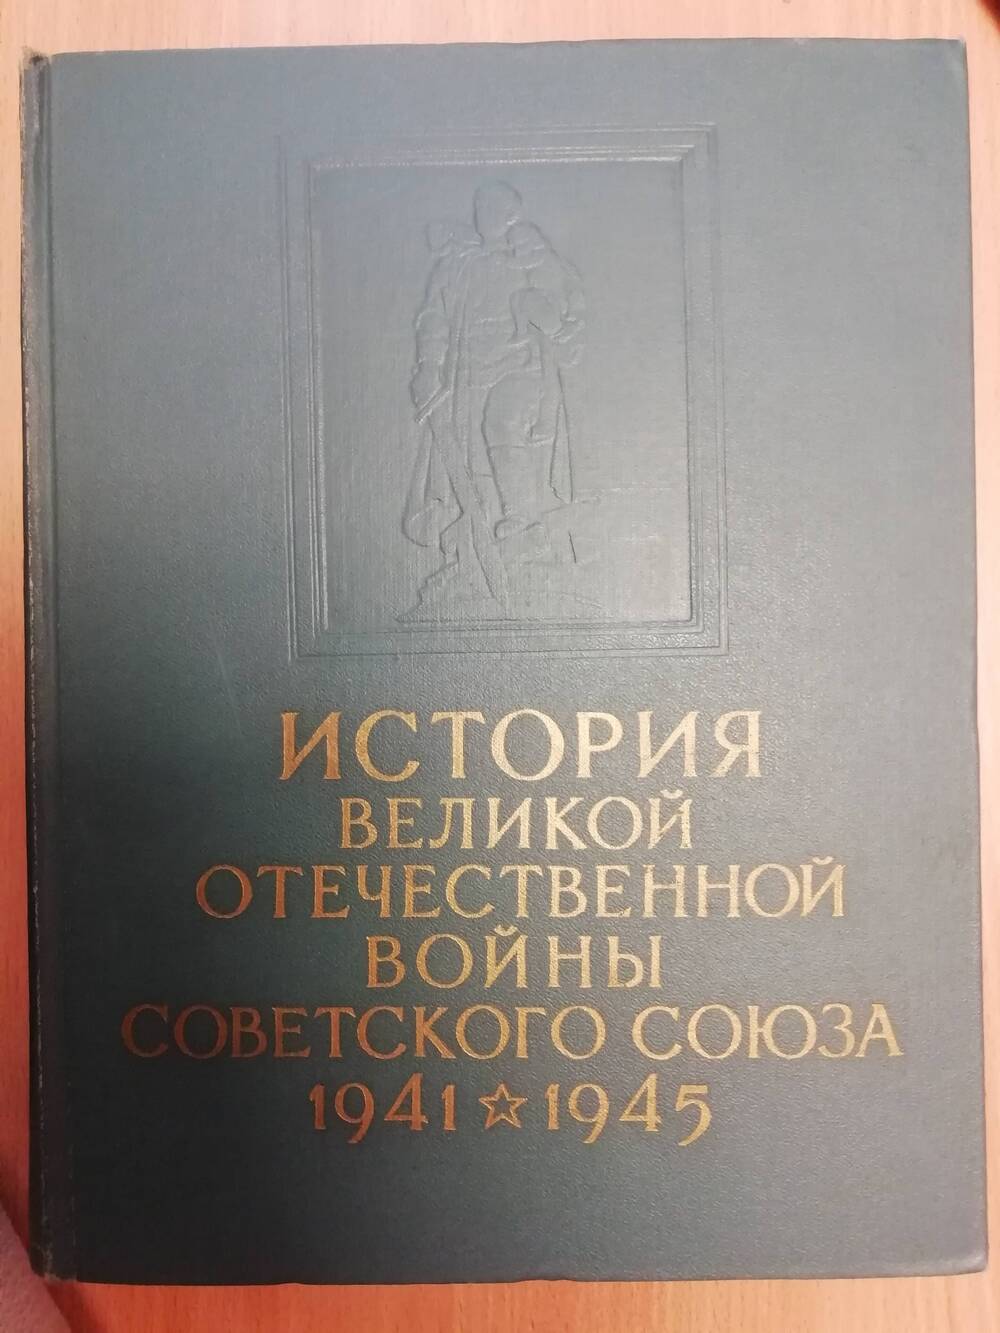 История Великой Отечественной войны Советского союза 1941-1945гг. Том 5. Сборник.